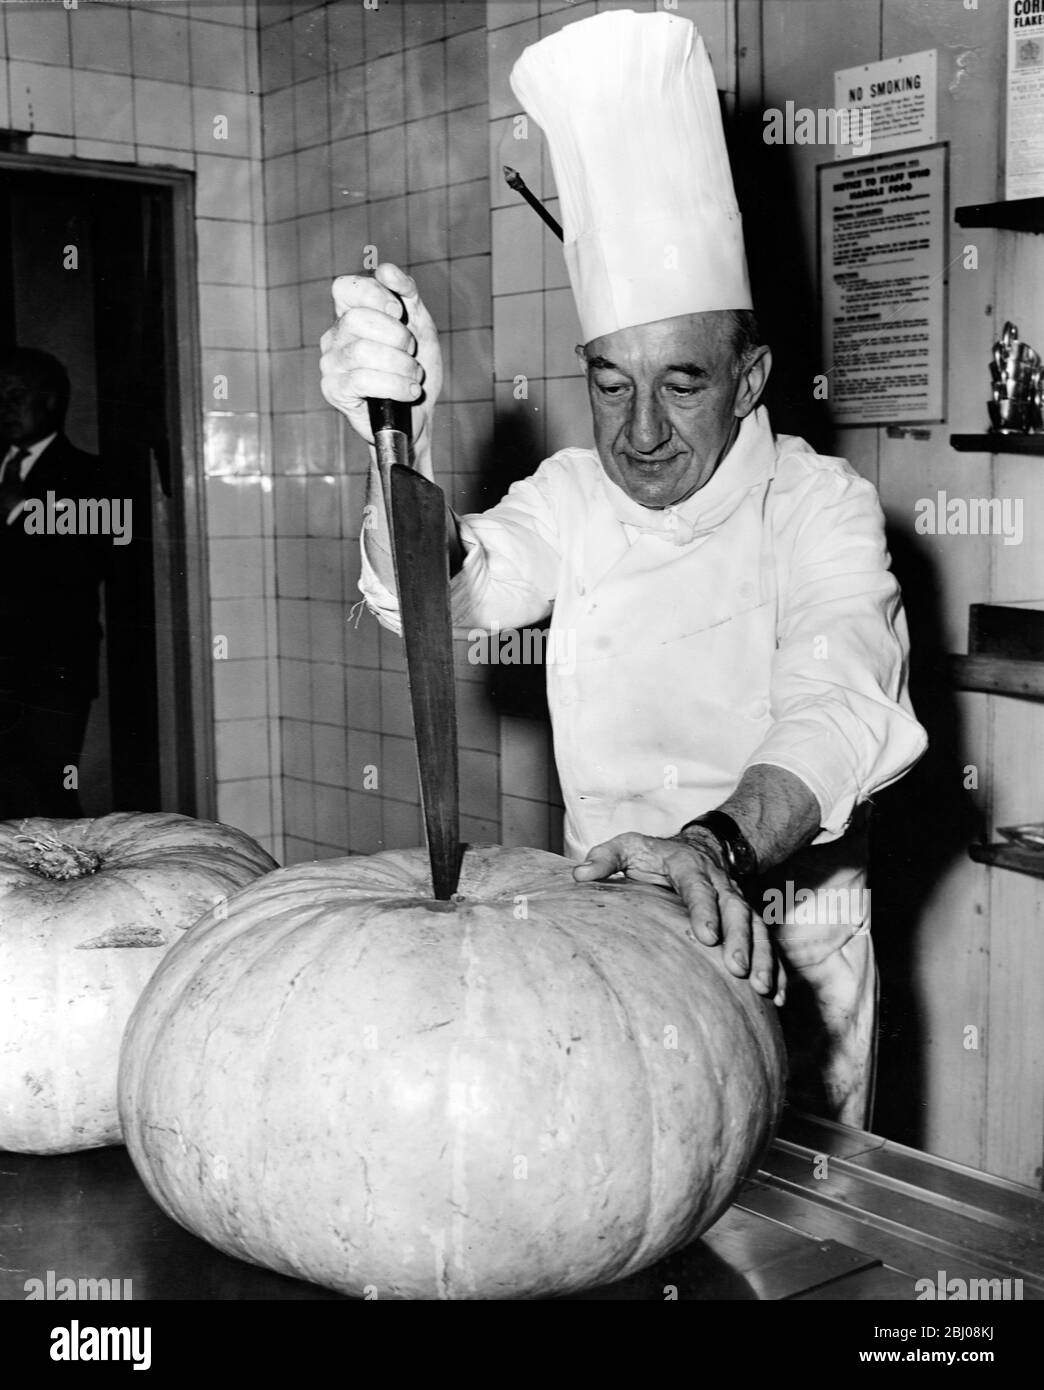 Jean Boutheney, un chef français né à Newcastle-upon-Tyne, cime une grande citrouille en préparation des tartes de citrouille qu'il va faire pour les célébrations de Thanksgiving Day à l'Union anglophone de Londres, Angleterre. - 25 novembre 1959 - Banque D'Images